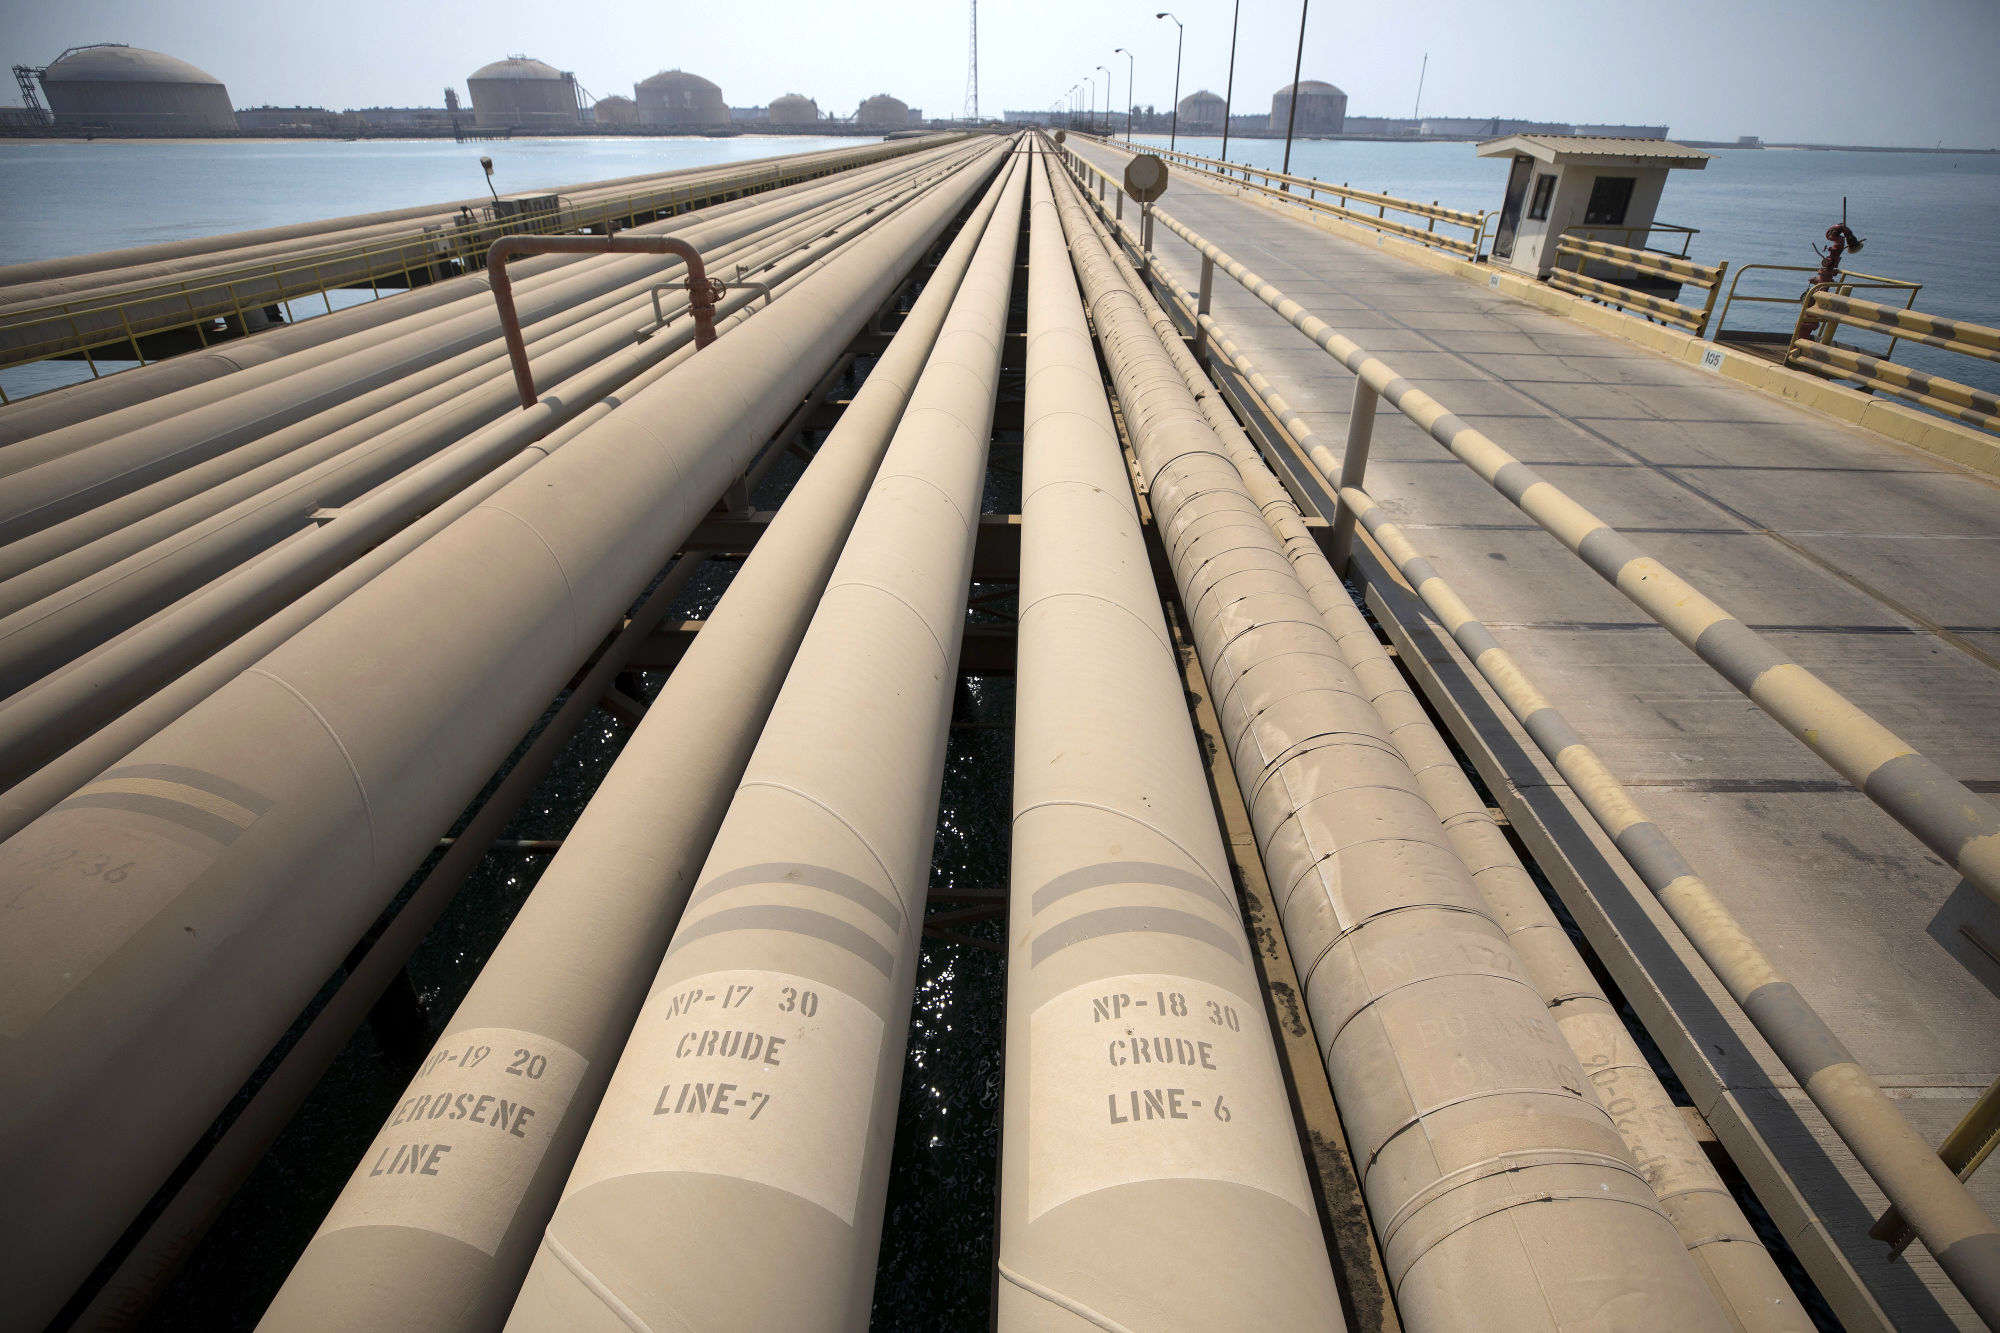 پامپئو: ۹۰ درصد درآمد نفتی ایران را کاهش دادیم

